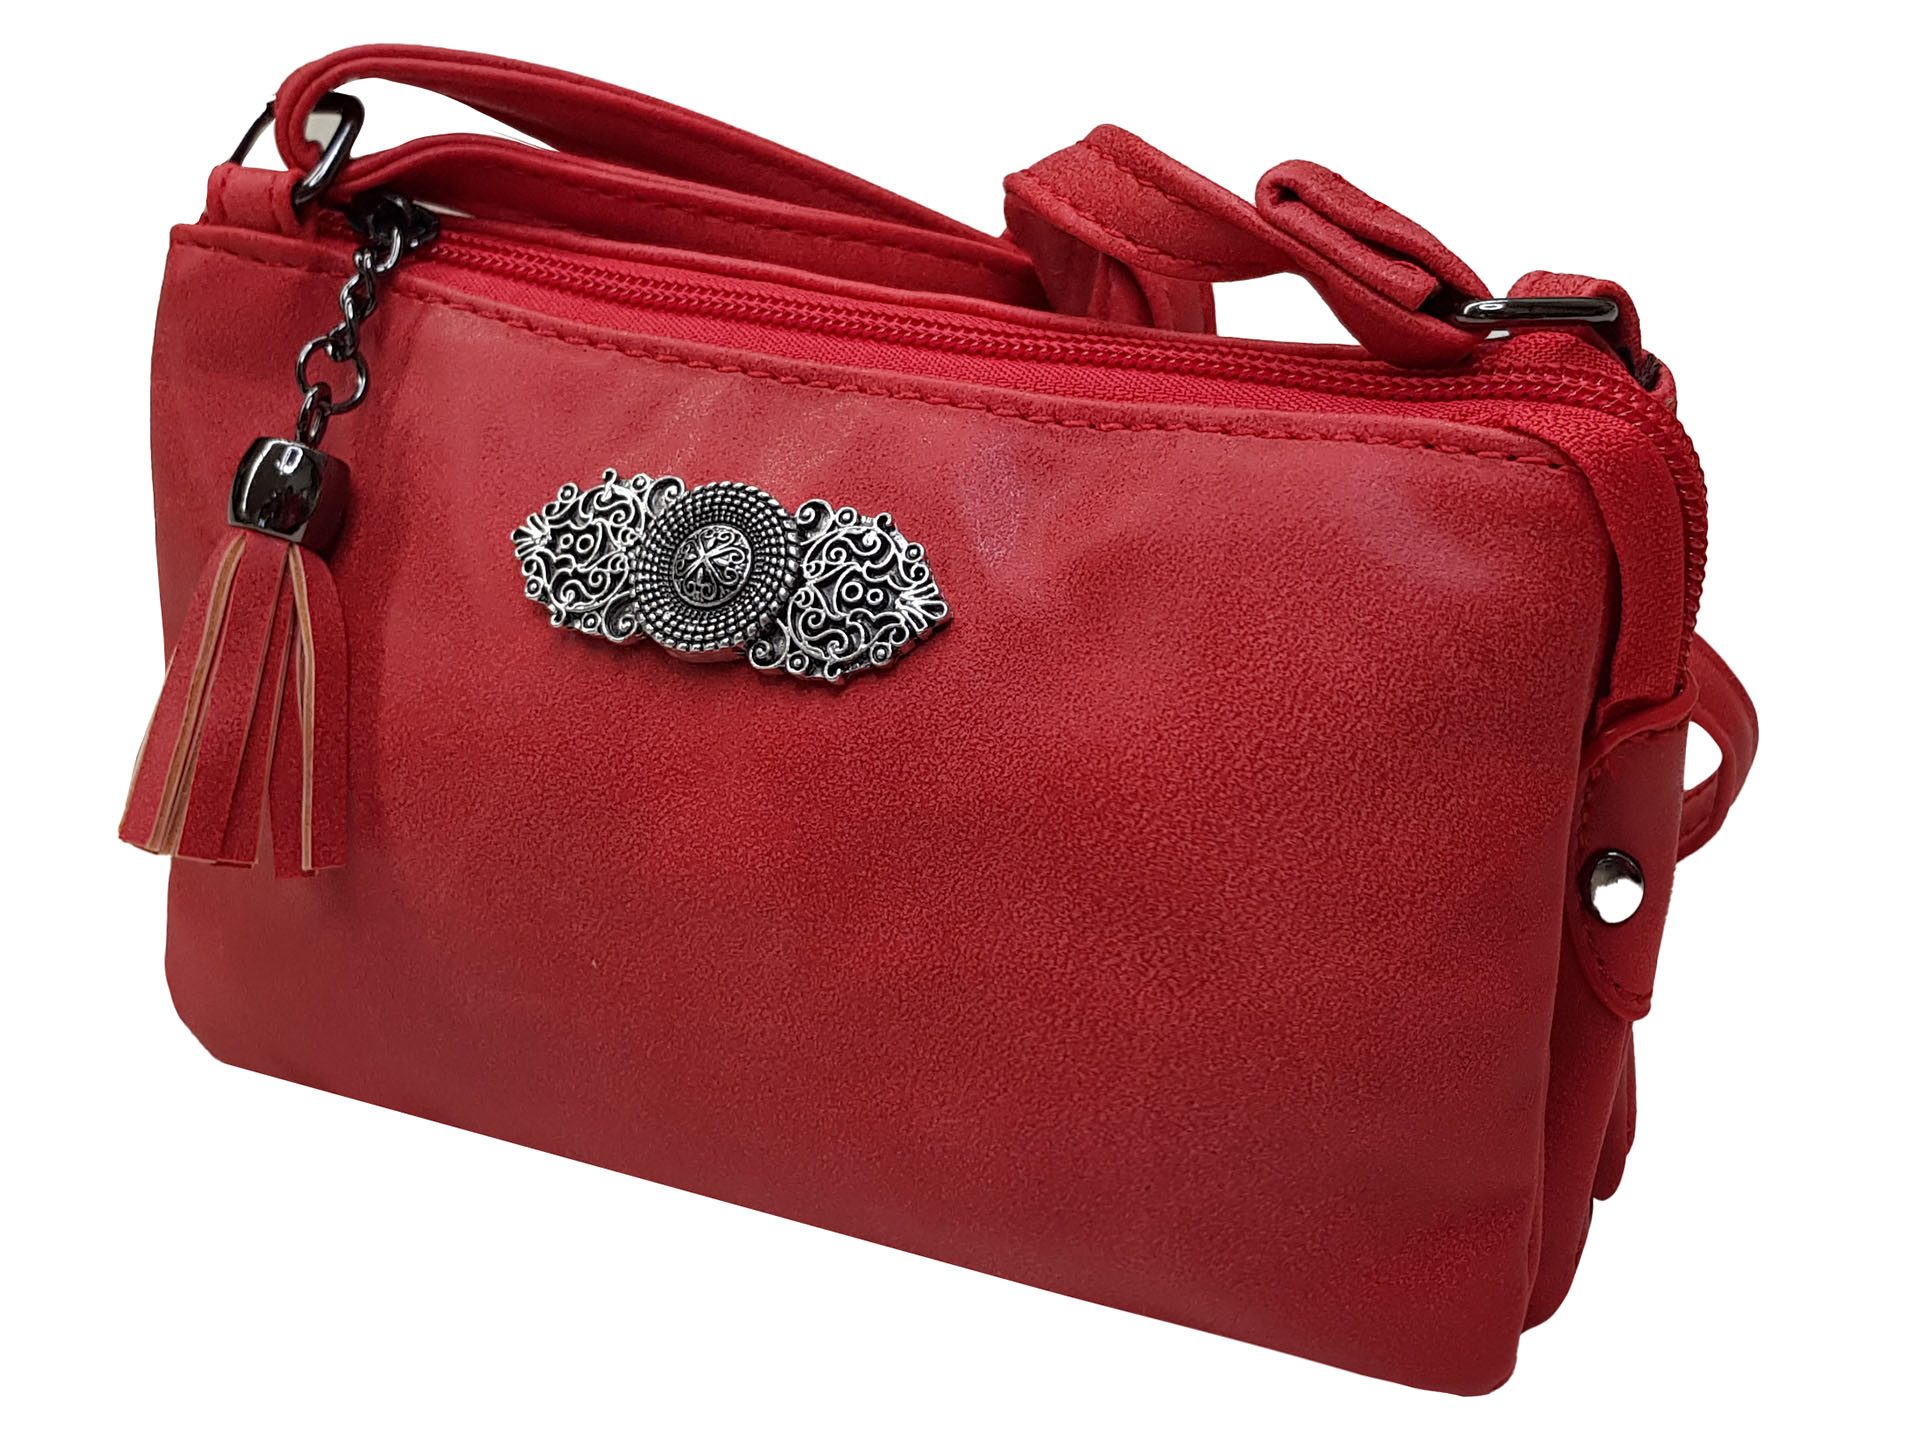 Moschen-Bayern Trachtentasche Trachtentasche Dirndltasche Damentasche Handtasche Umhängetasche